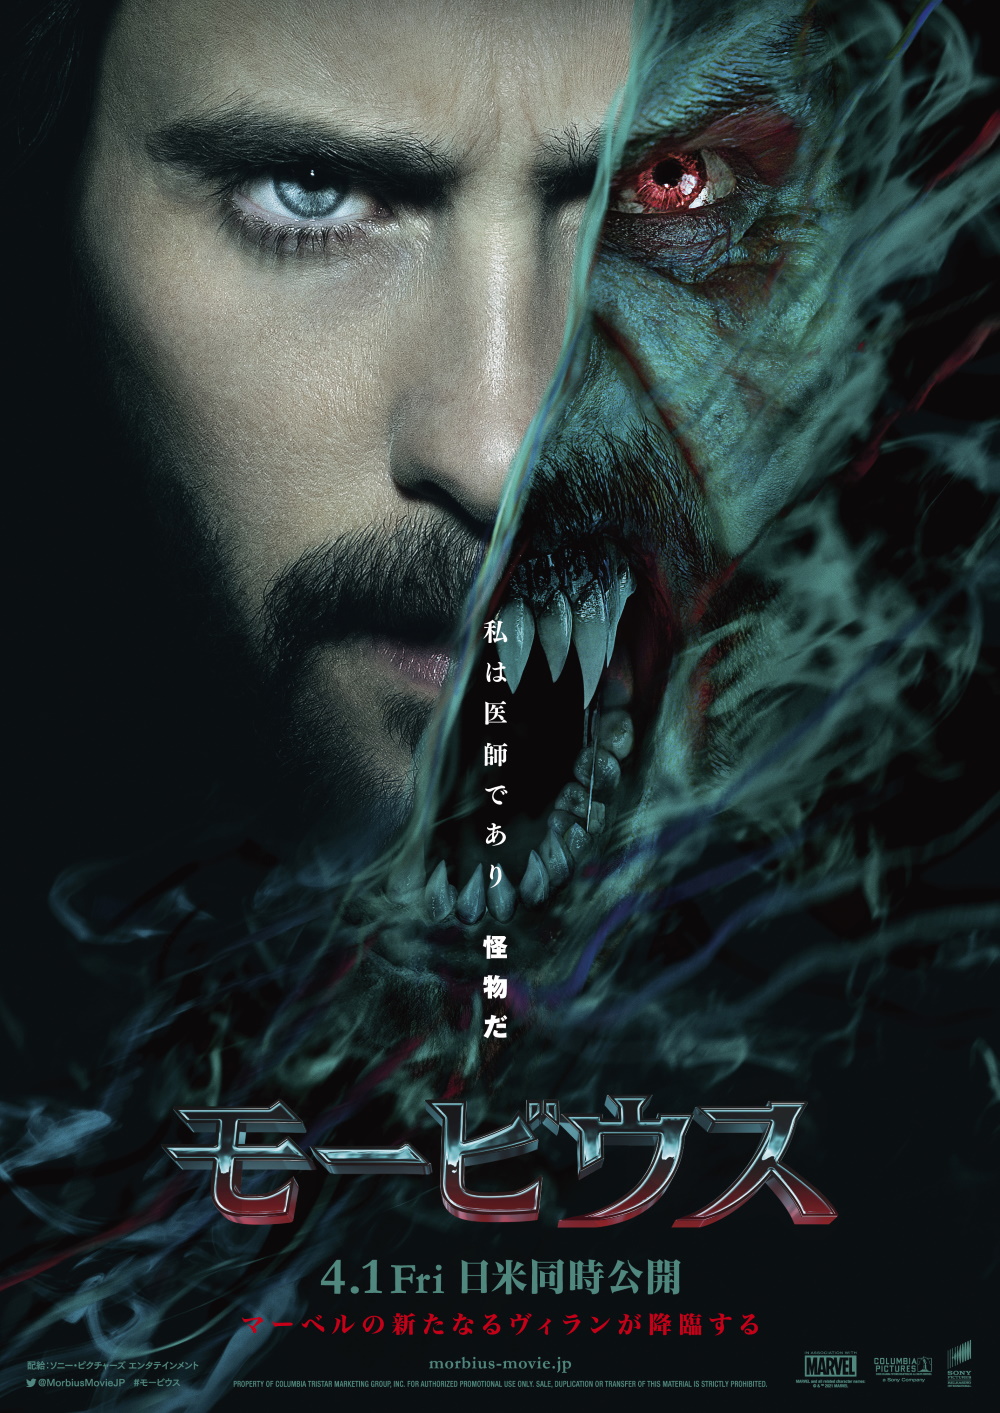 マーベルの新たなヴィランを描く映画『モービウス』が4月1日日米同時公開決定—2つの顔が写し出された日本国版ポスターも解禁